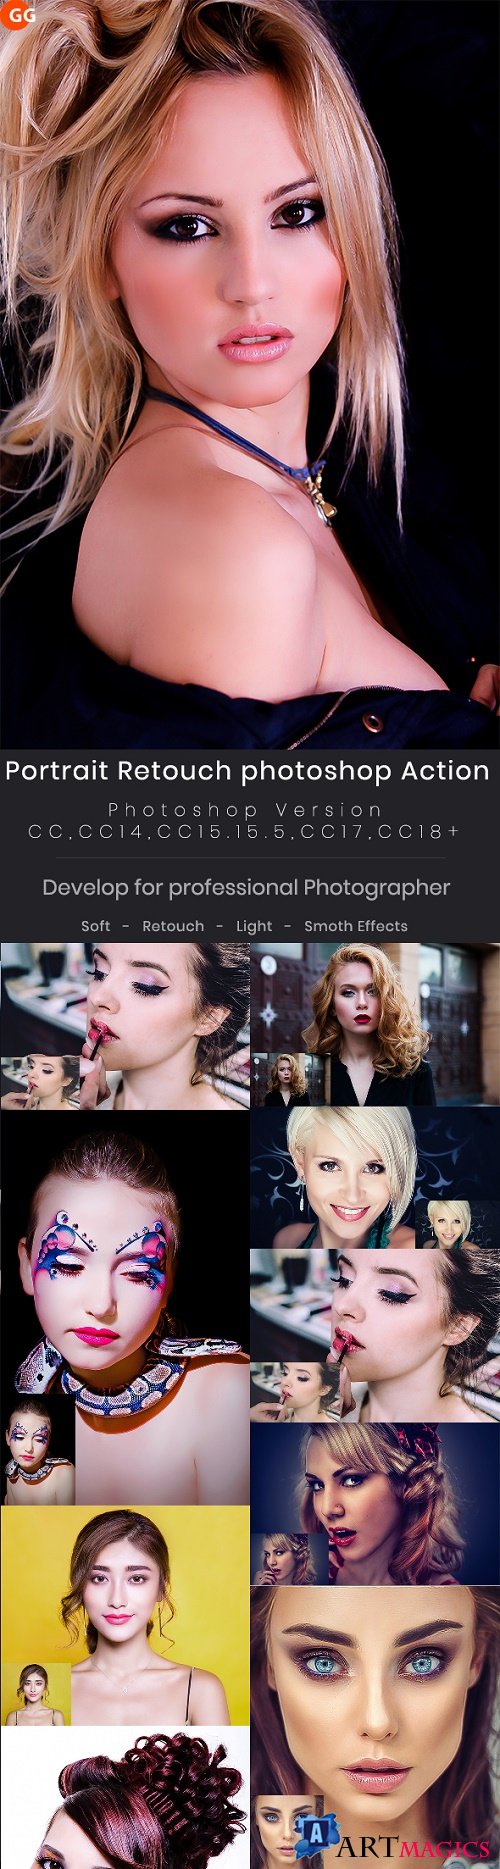 10 Portrait Retouch Photoshop Action 22126762